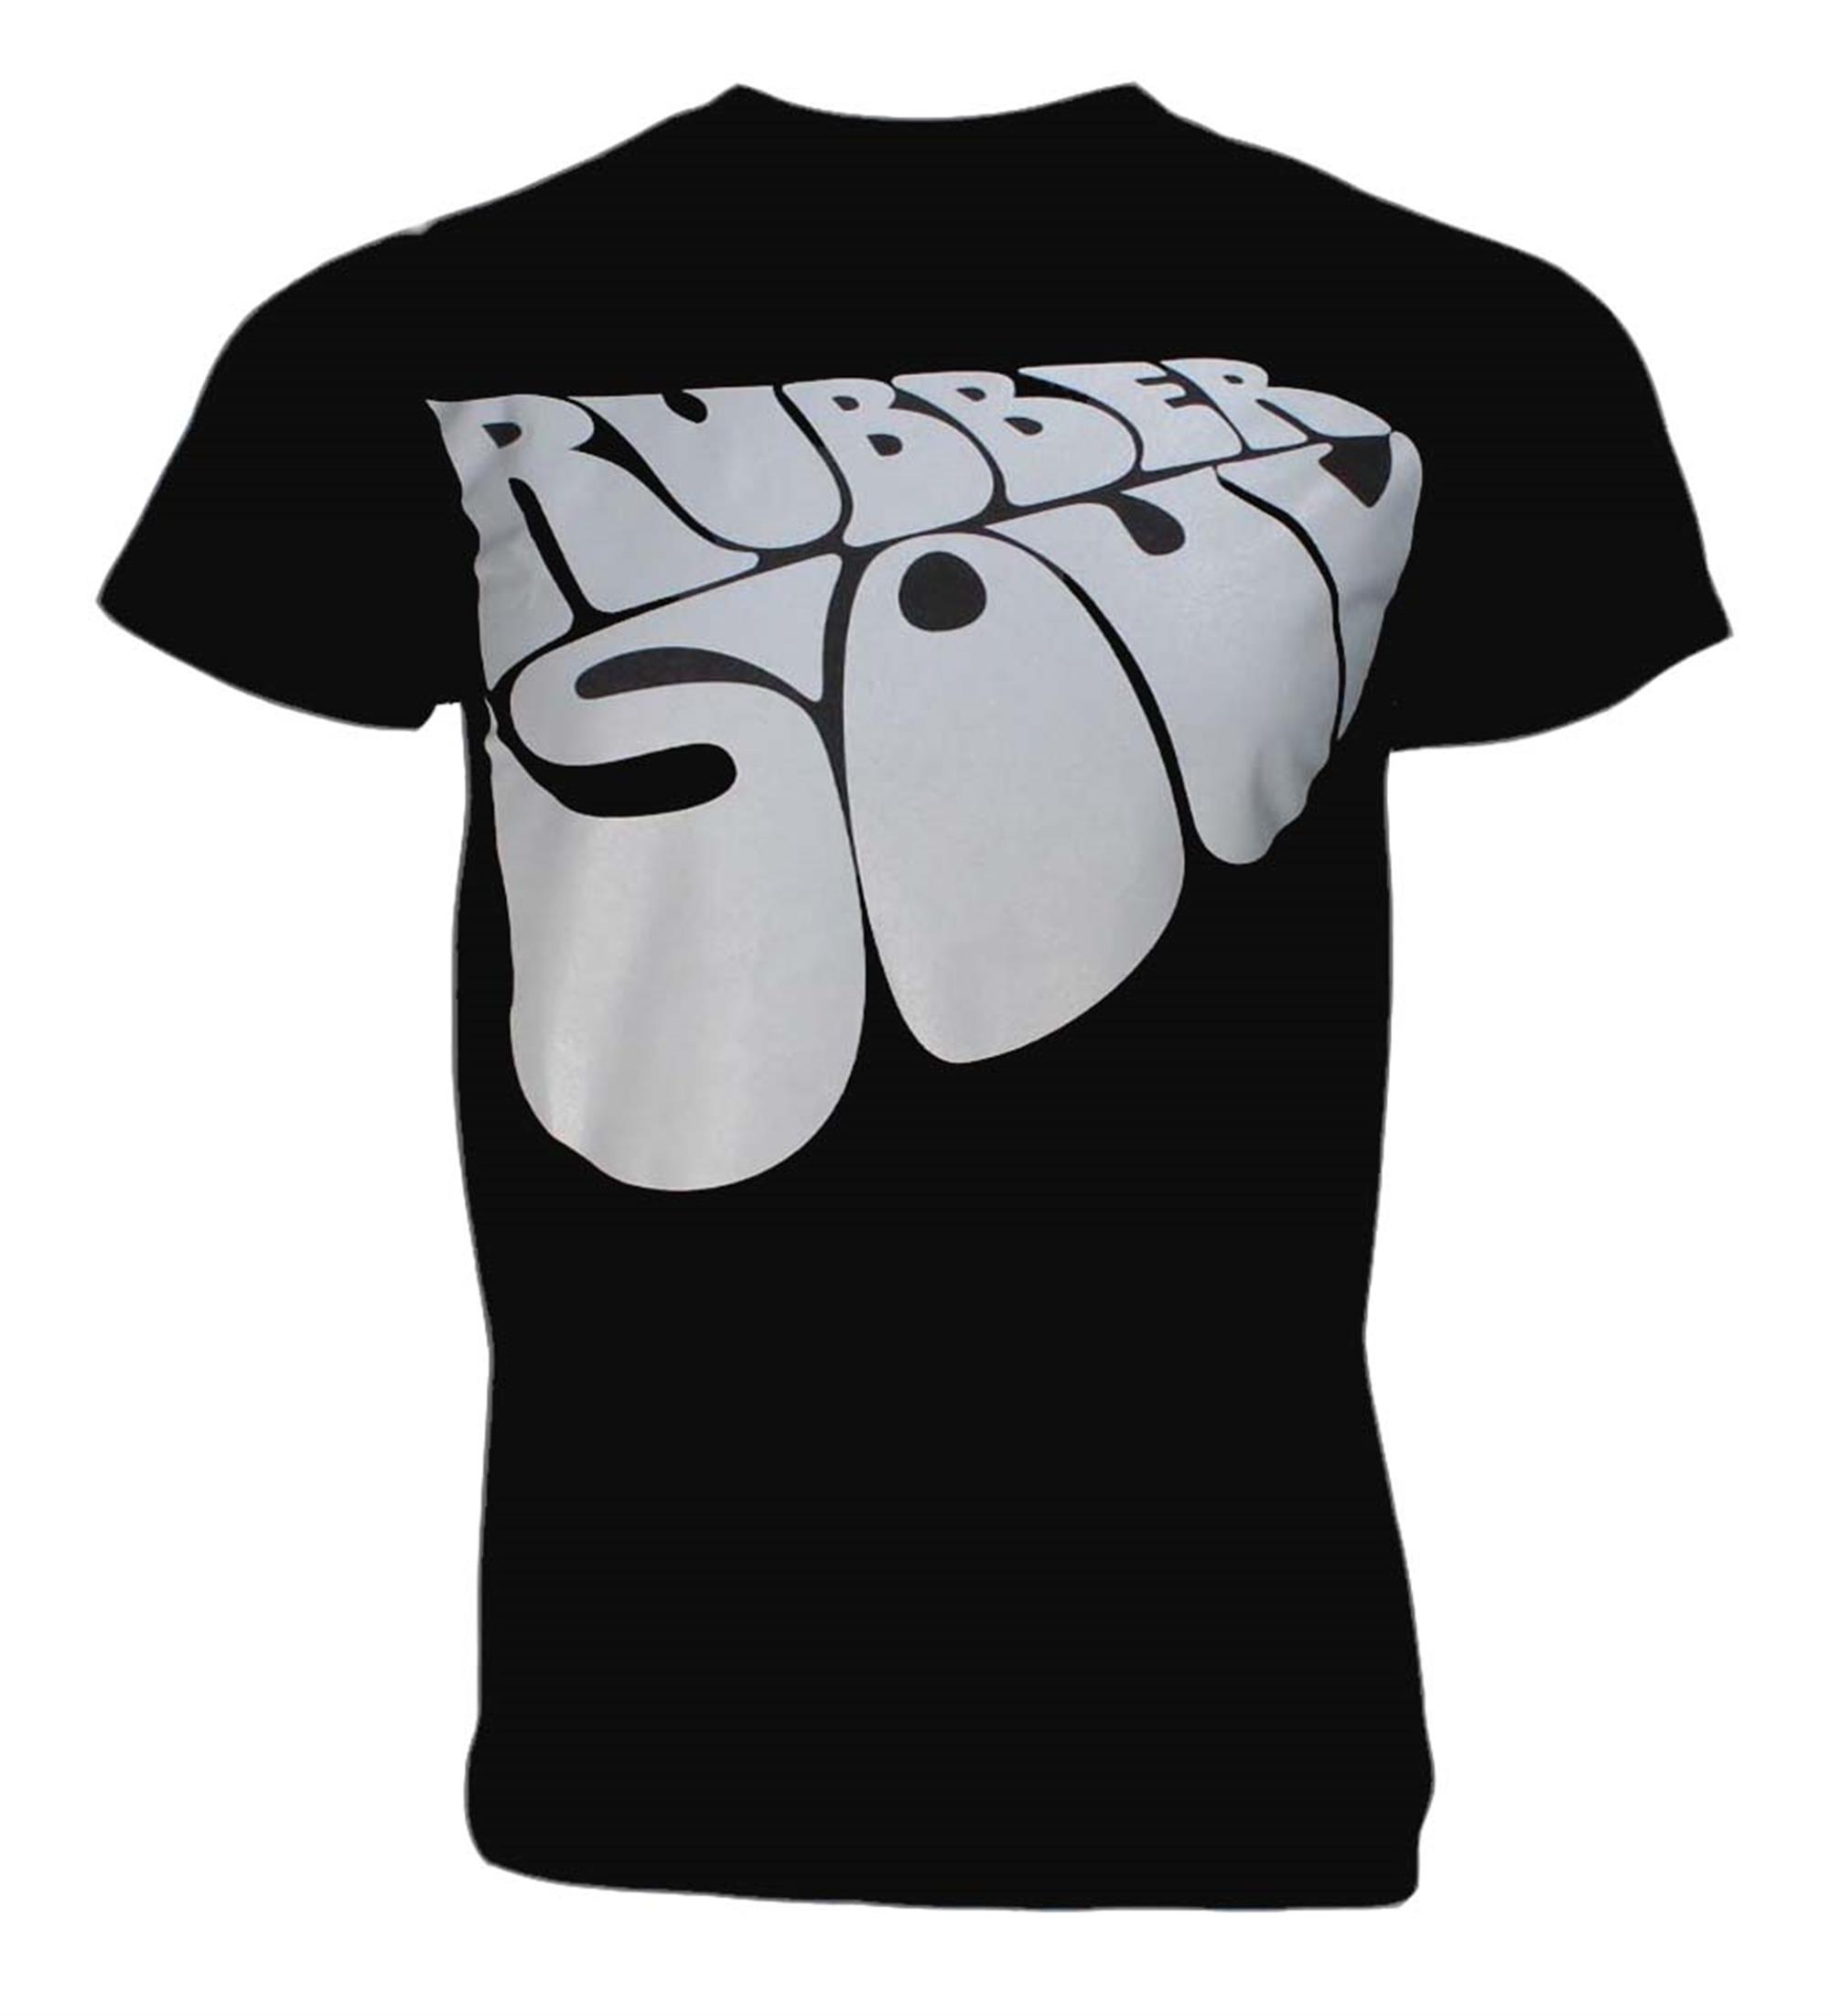 Beatles Rubber Soul T-Shirt